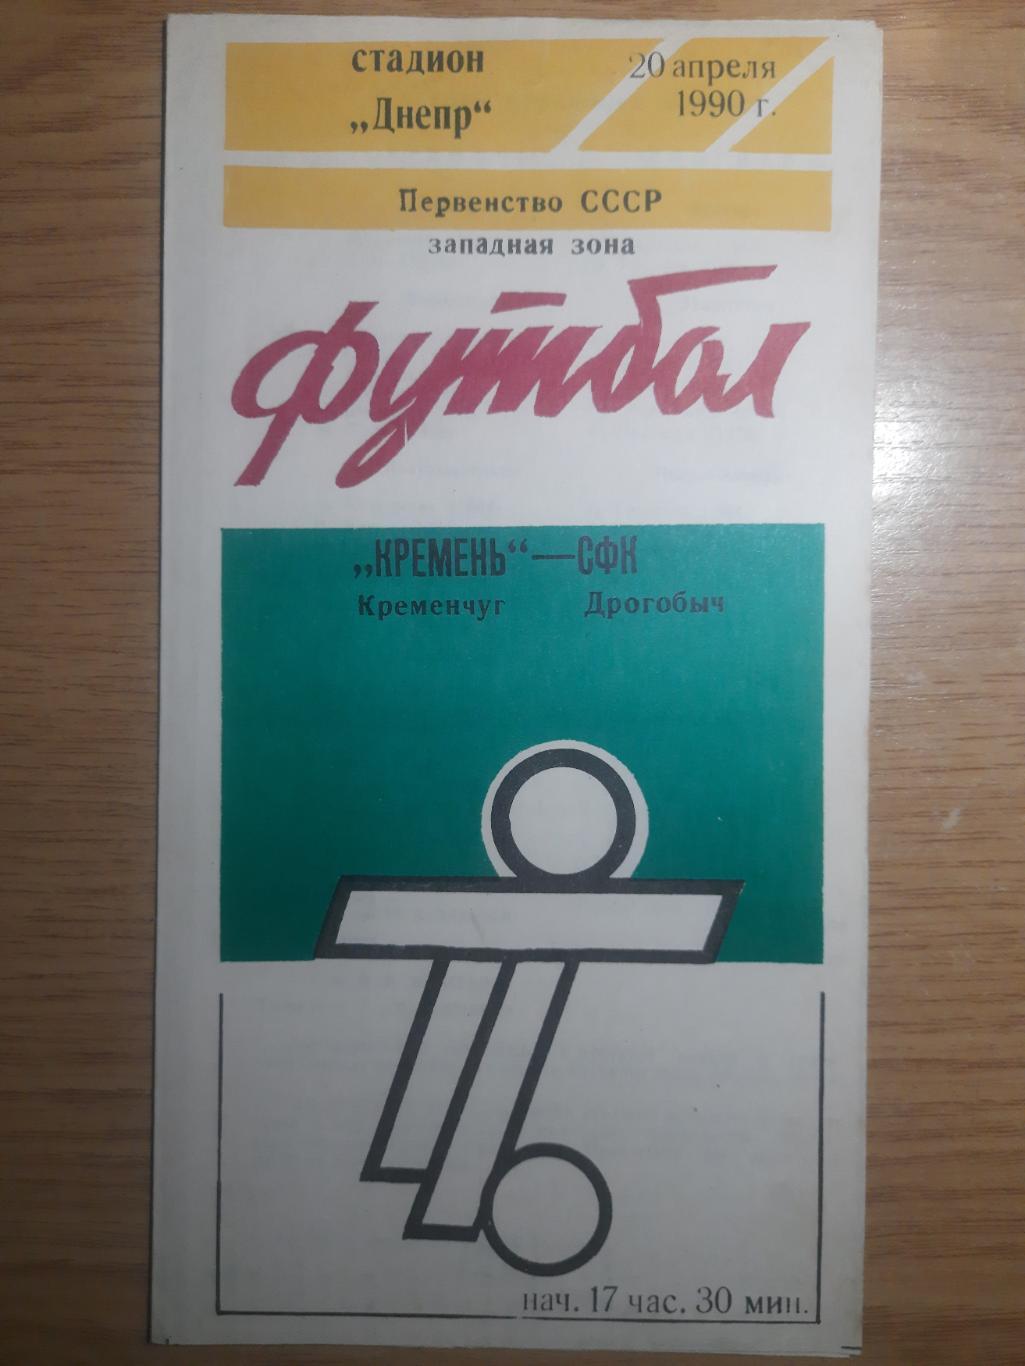 Кремень Кременчуг-СФК Дрогобыч 20.04.1990.